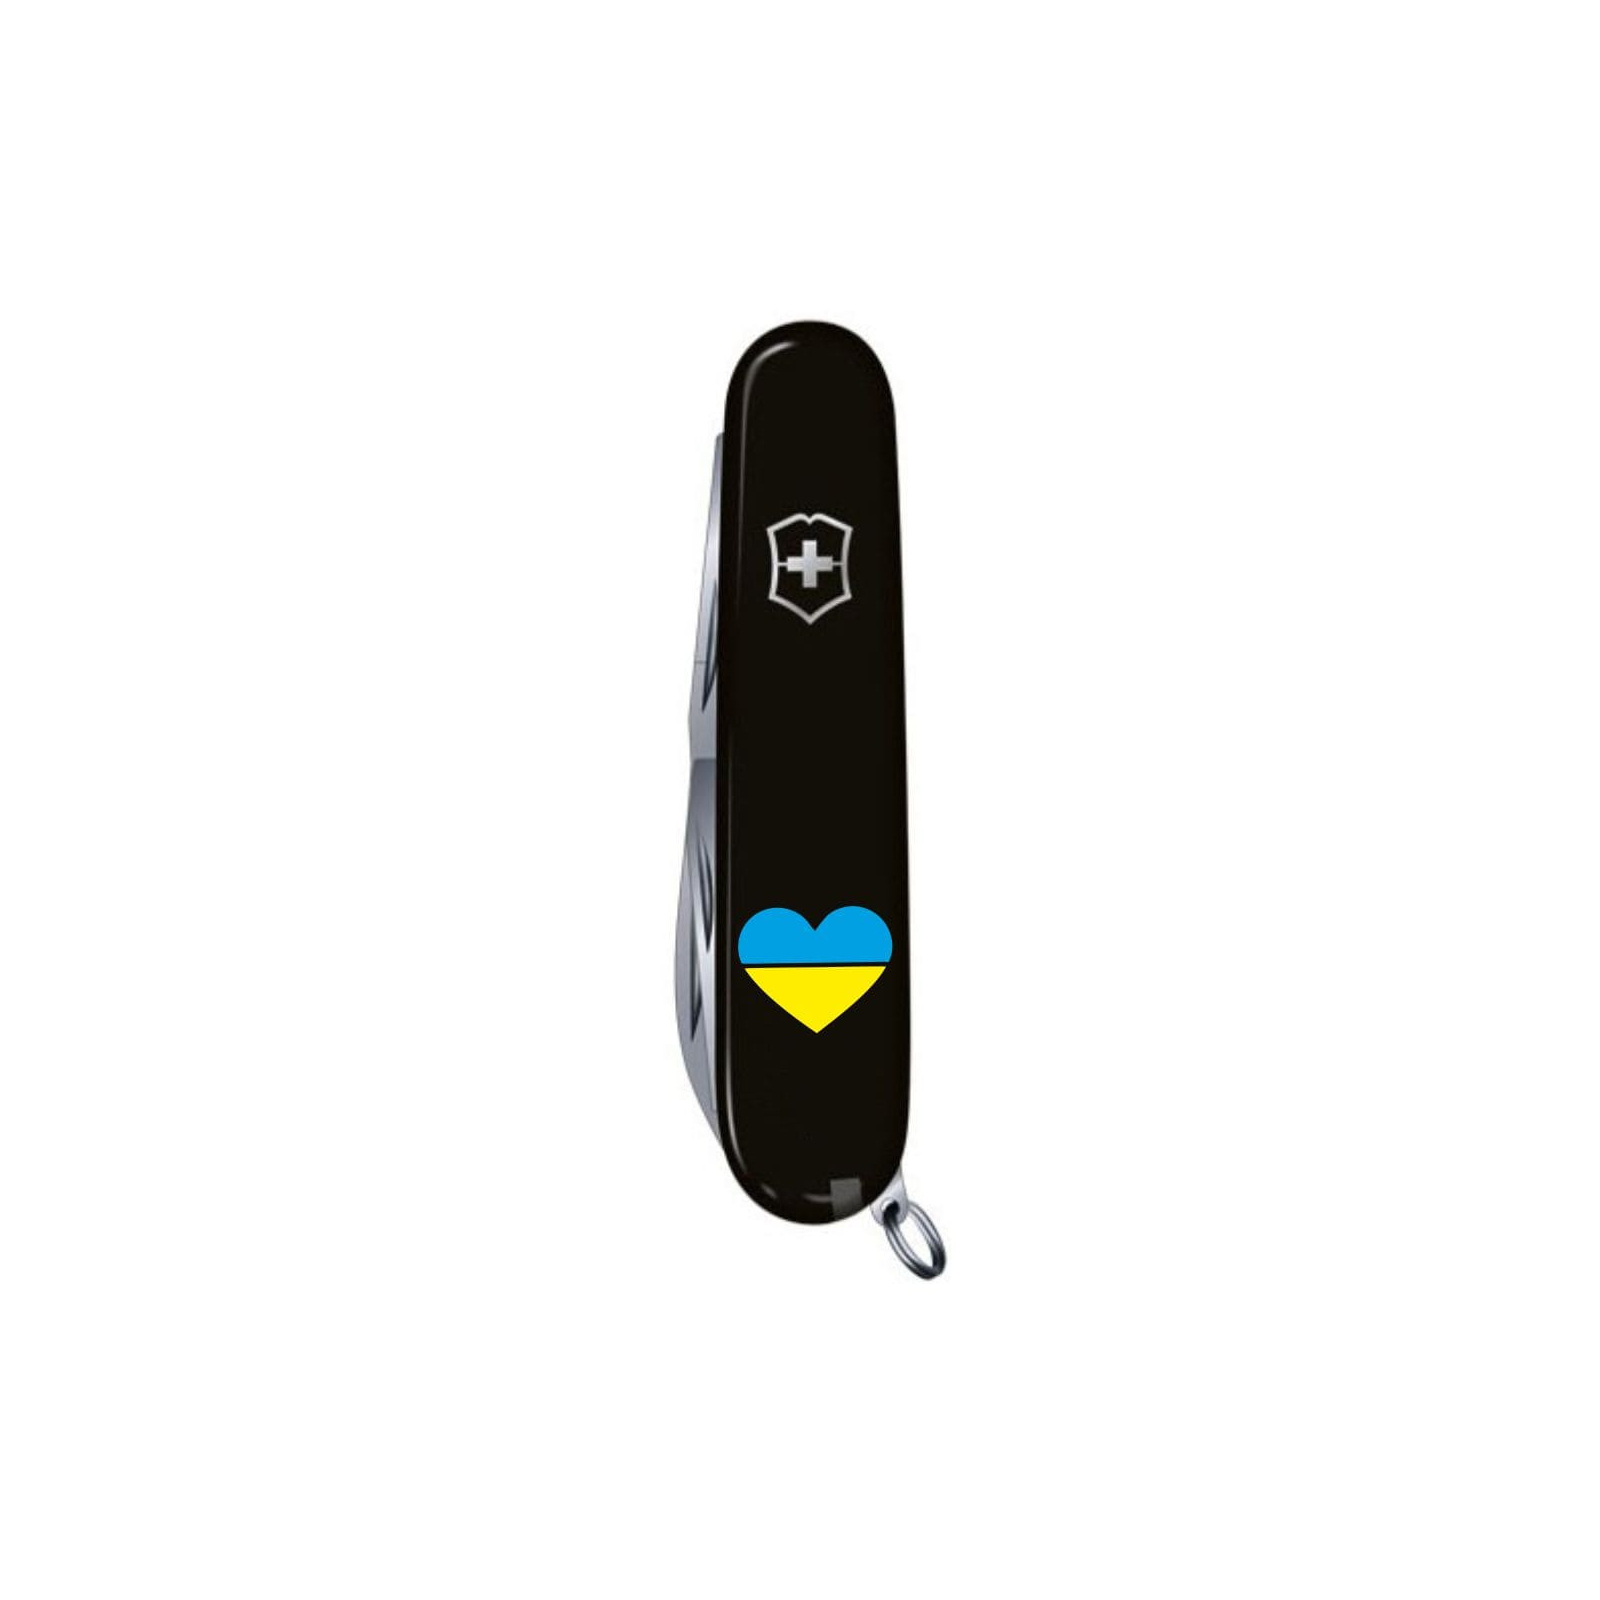 Нож Victorinox Climber Ukraine Black "Серце жовто-блакитне" (1.3703.3_T1090u) изображение 4